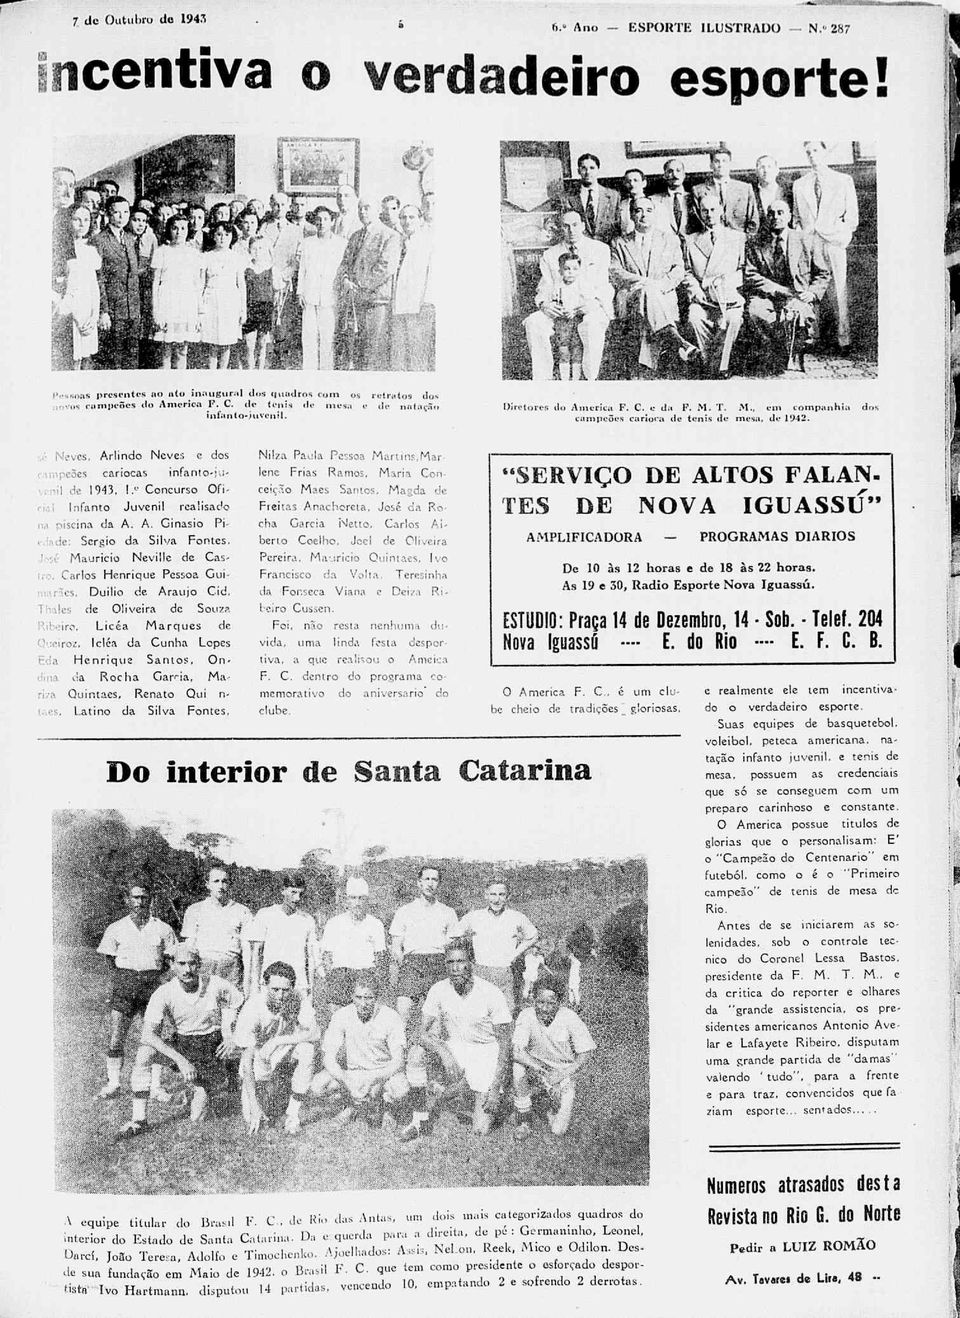 T. M., em companhia dos campeões carioca de tenis de mesa, de 1942. sé Neves. Ari indo Neves e dos ampeões cariocas infanto-jii* venil de 1943,!;.